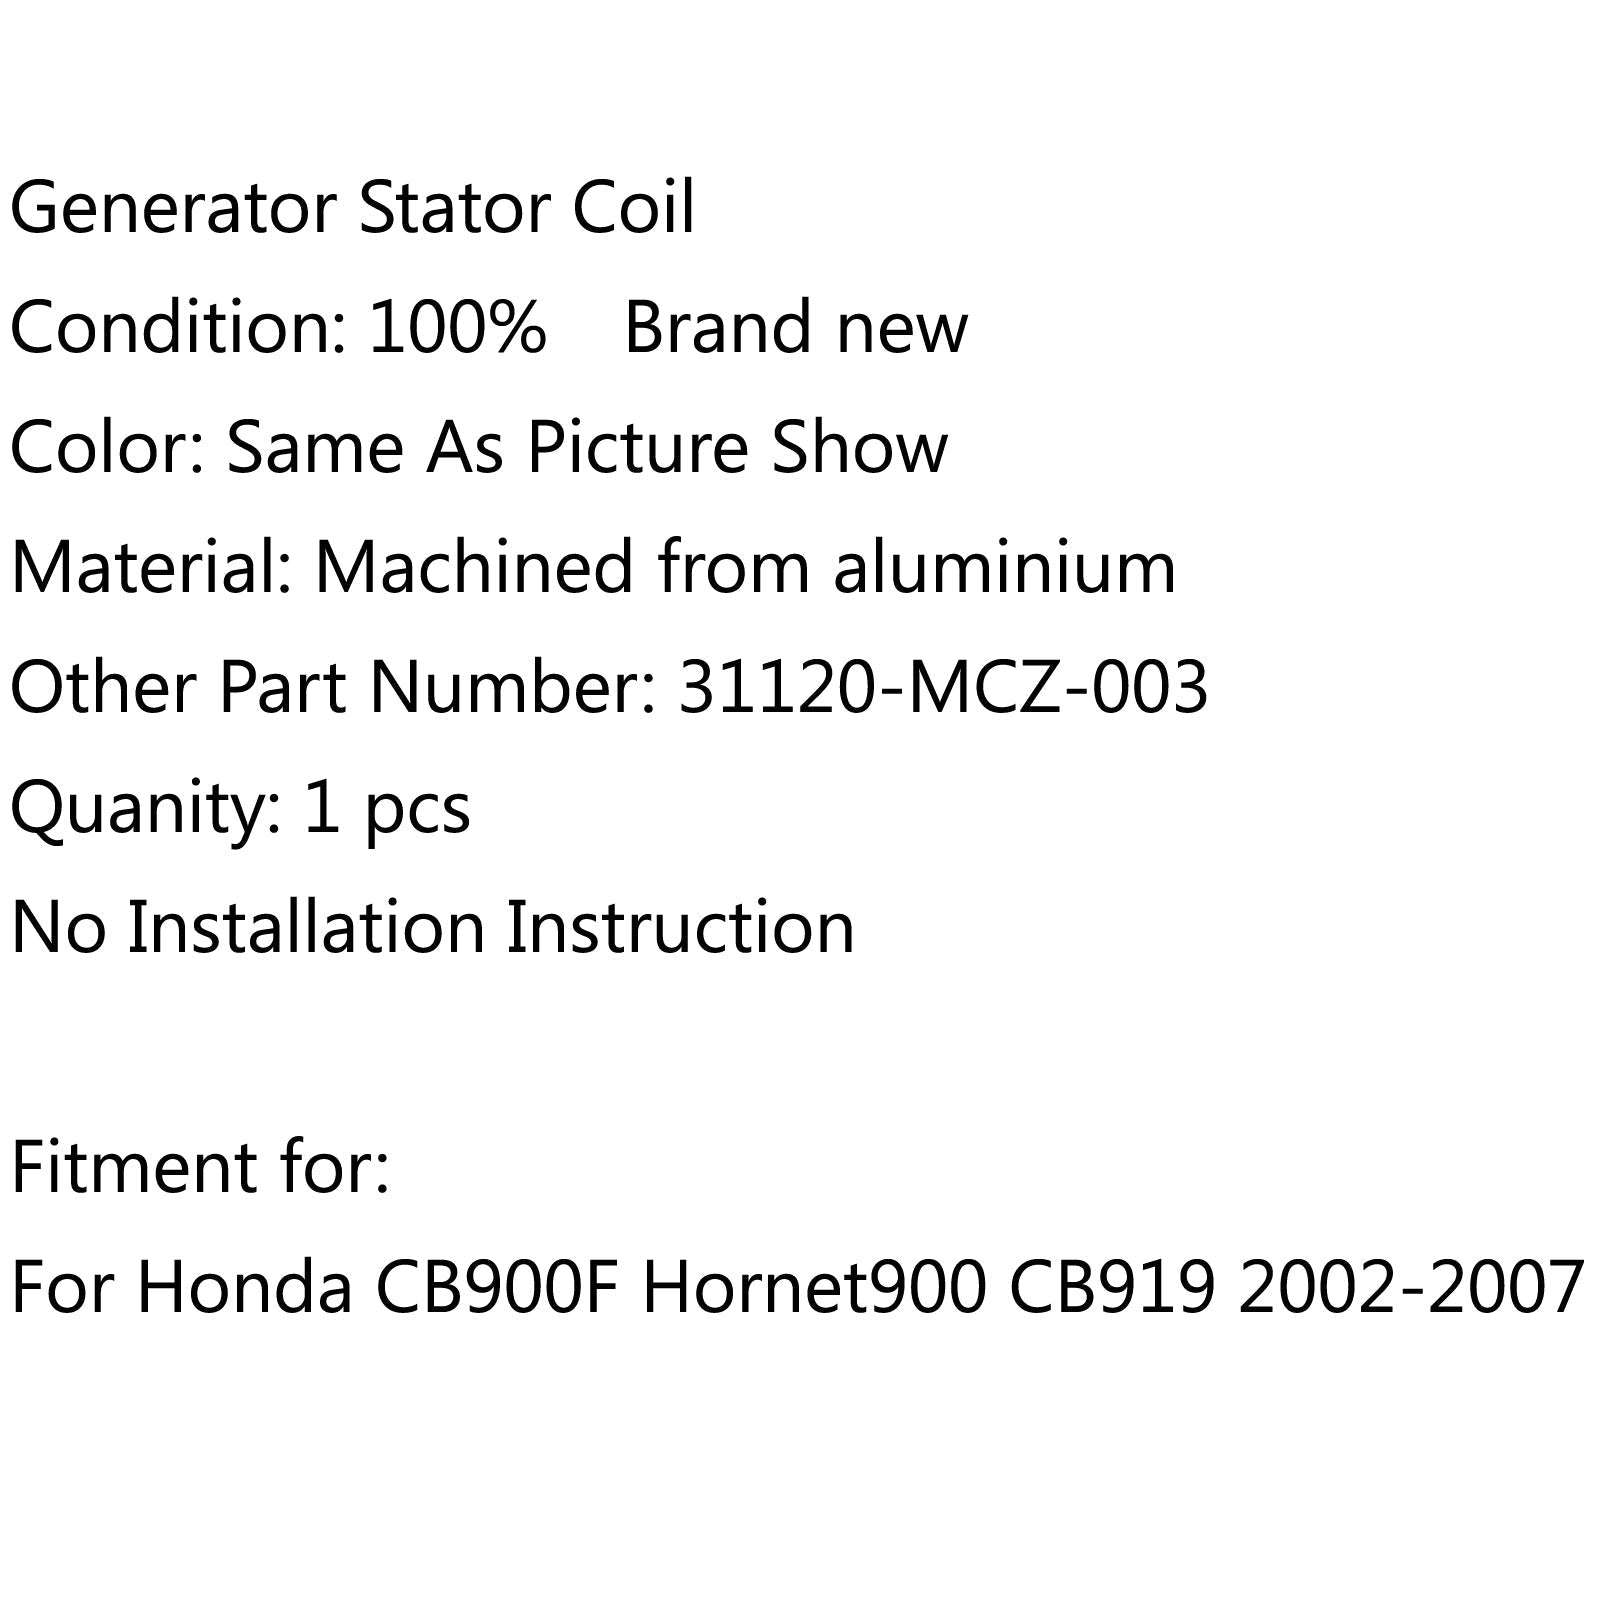 Bobine de stator de générateur magnéto pour Honda CB900F Hornet900 CB919 (02-2007) générique